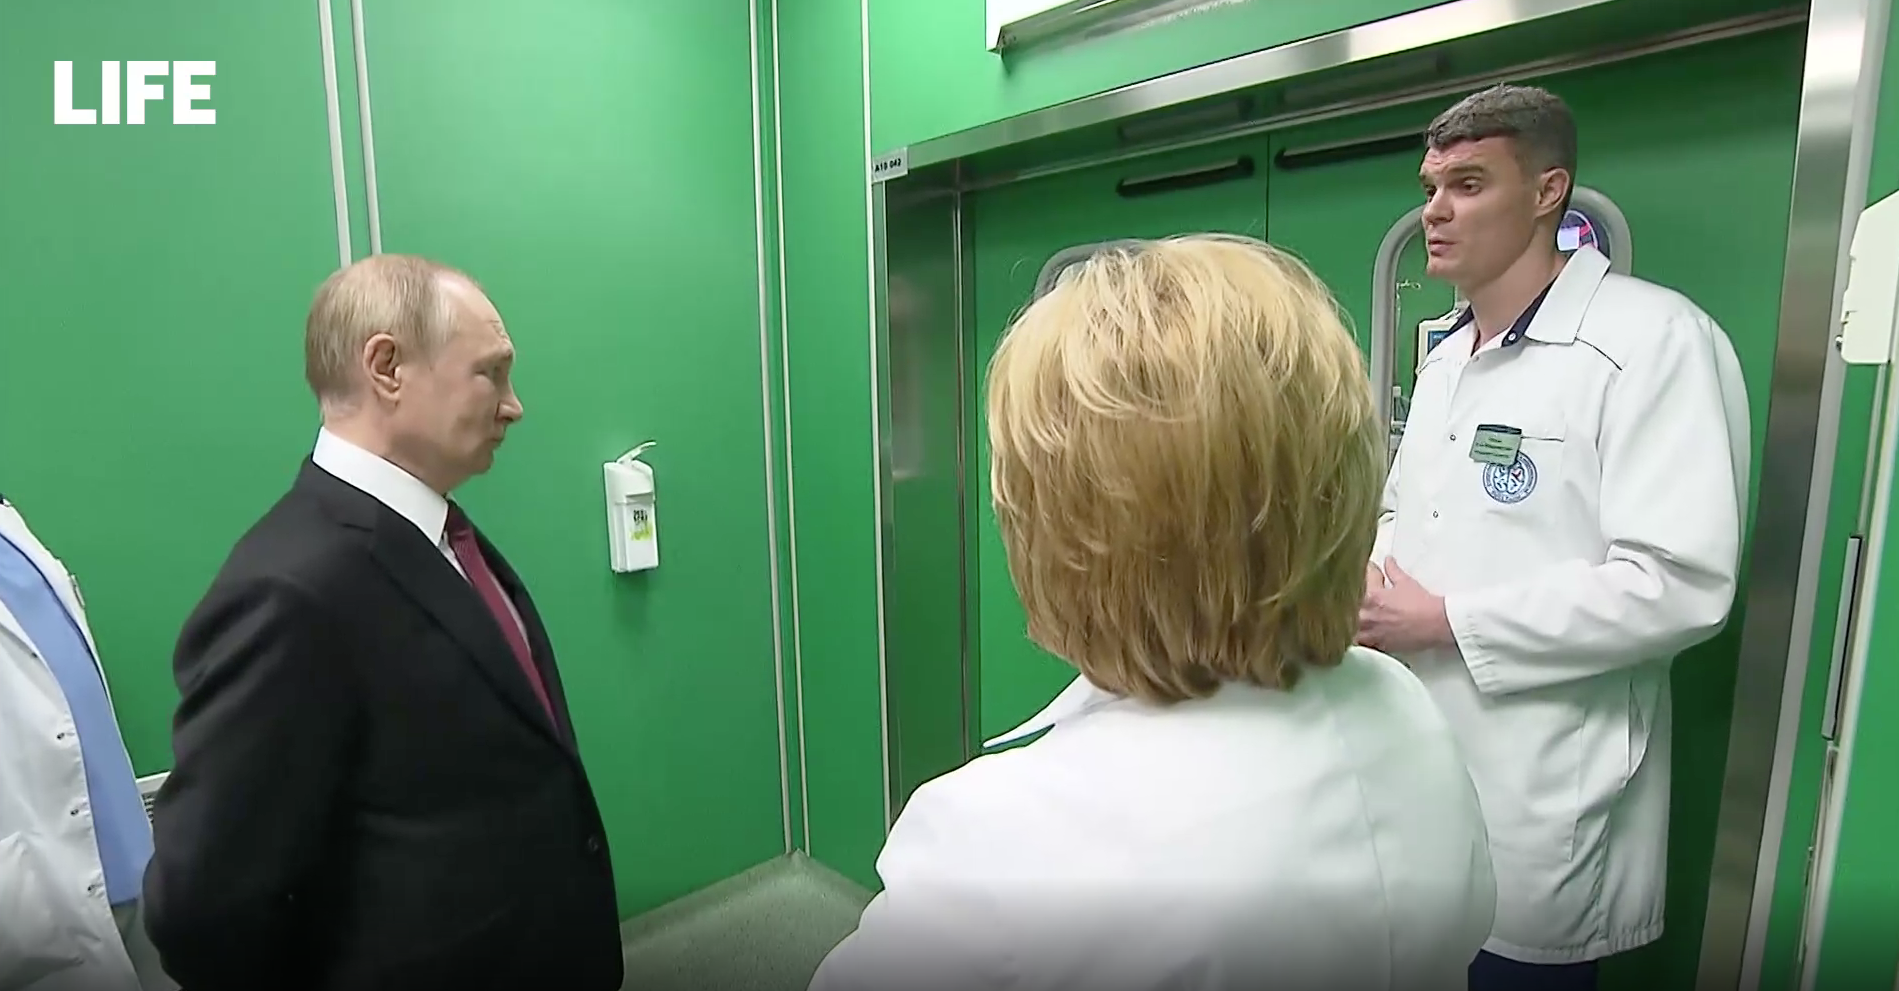 Путин перекрестил пациентку, которой в его присутствии сделали уникальную операцию на мозге